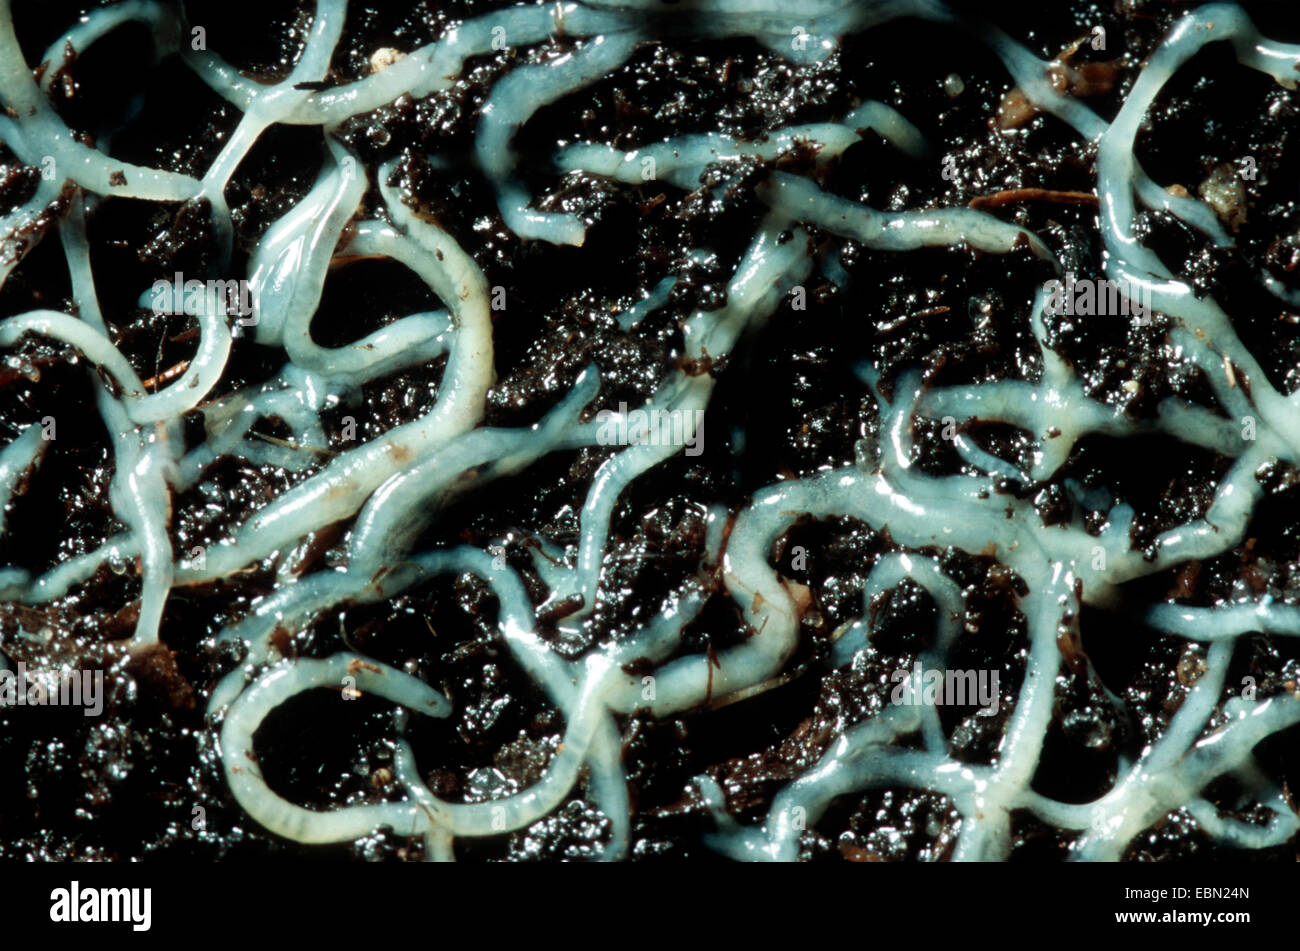 white potworm (Enchytraeus albidus), great number of worms on wet soil Stock Photo